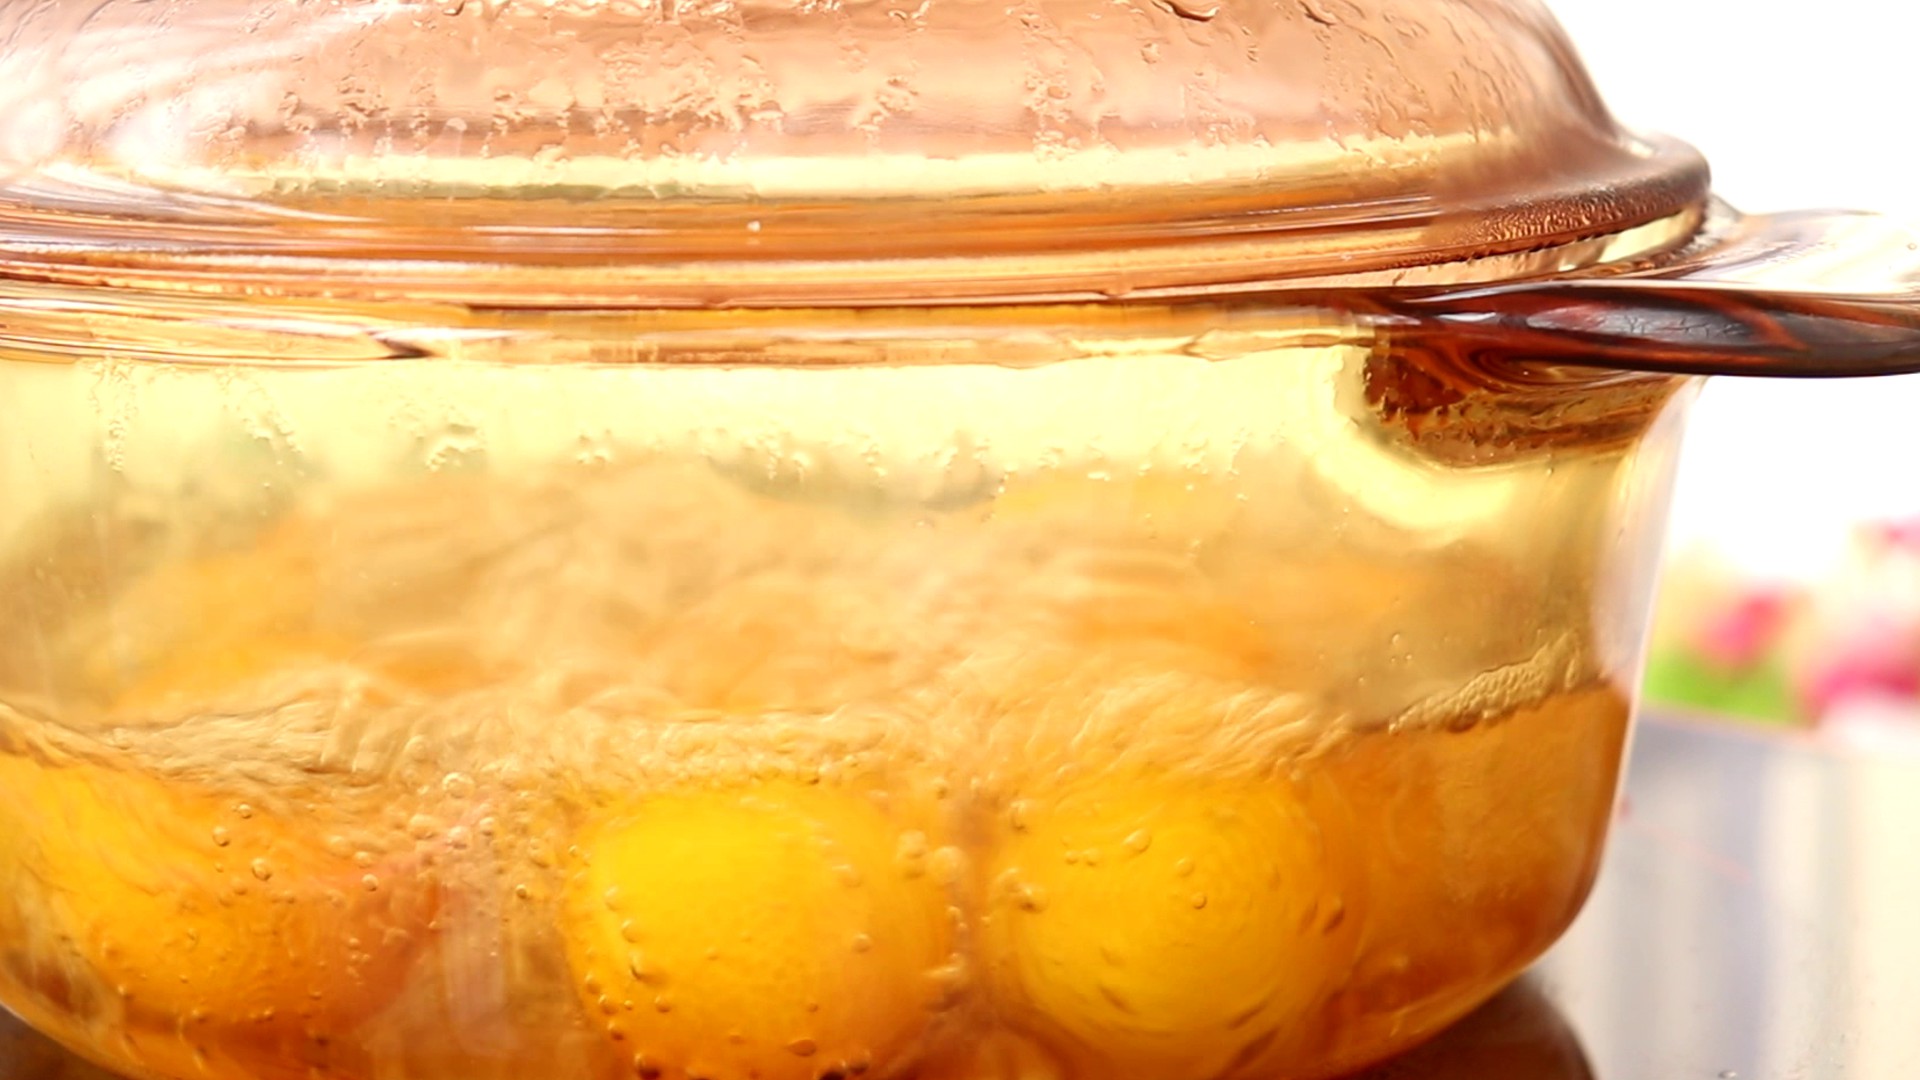 蜜饯金桔 宝宝零食,转中小火熬制</p>
<p>tips：这样可以让糖分很好的浸入金桔里面